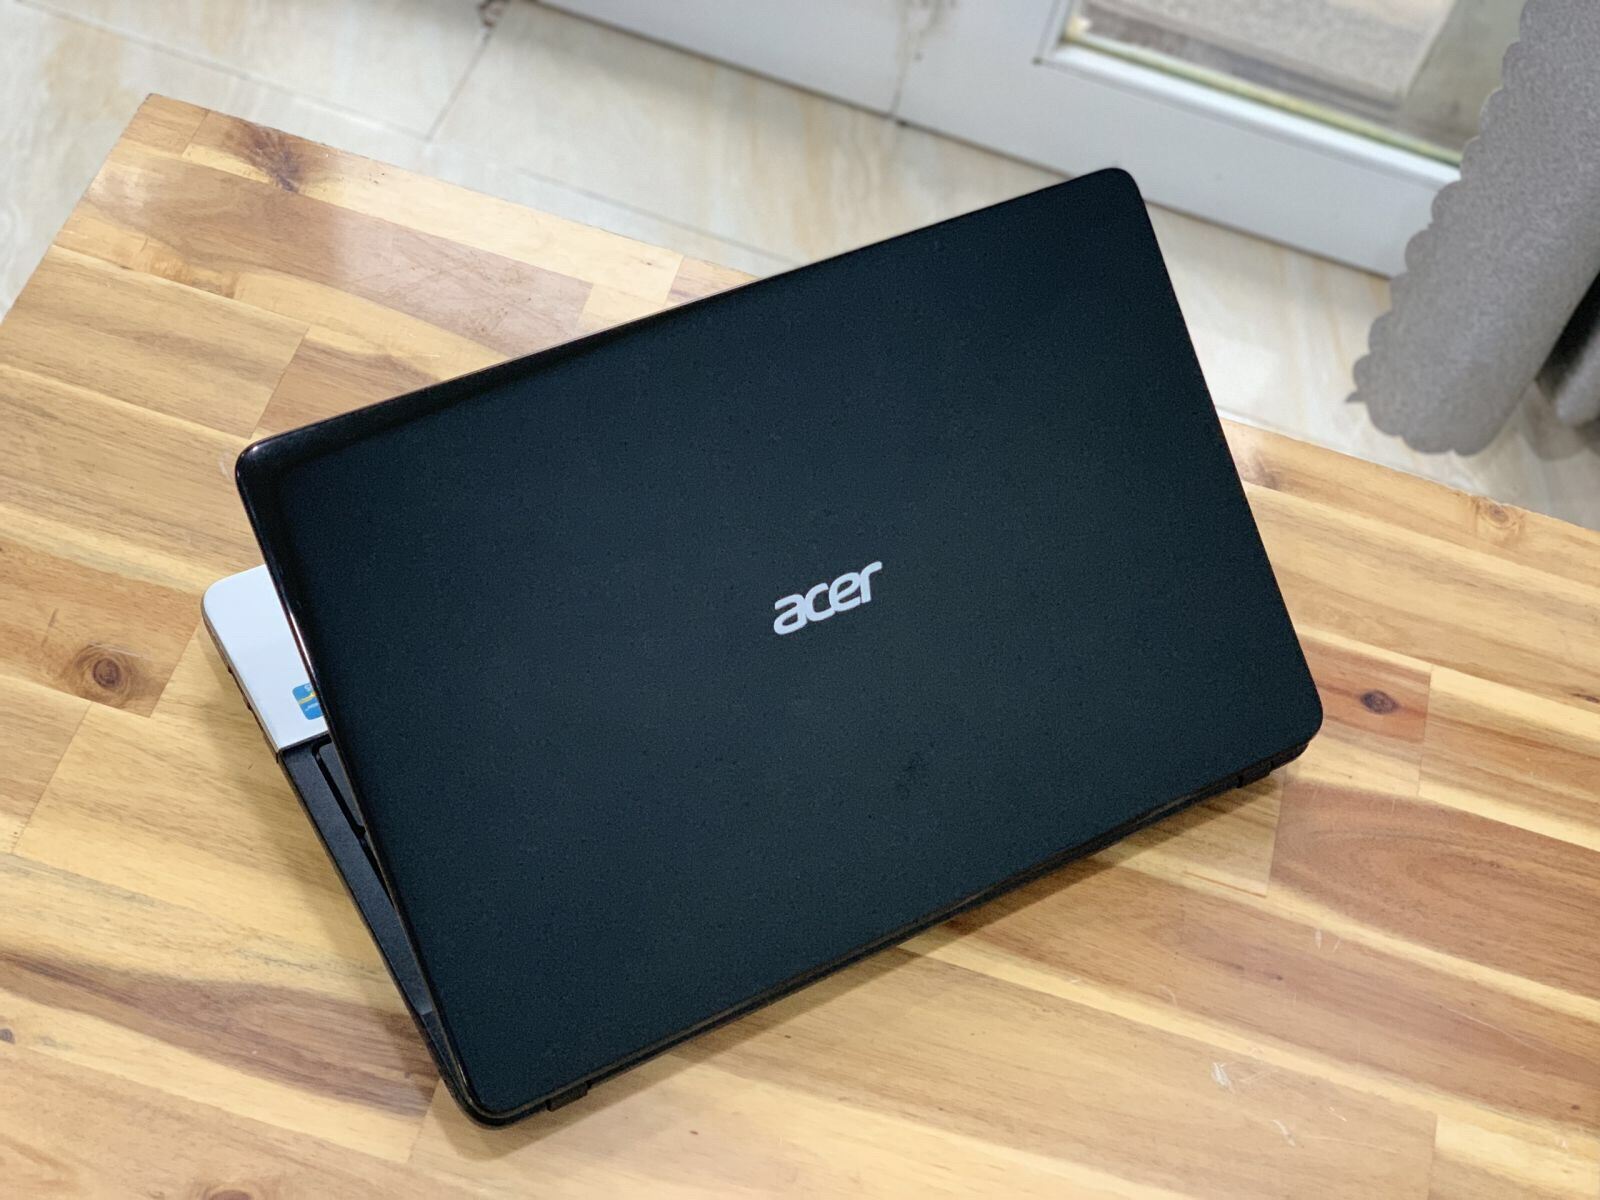 [Trả góp 0%]Acer aspire E1-571 Core i5 3230M 4G 500G 15.6inch